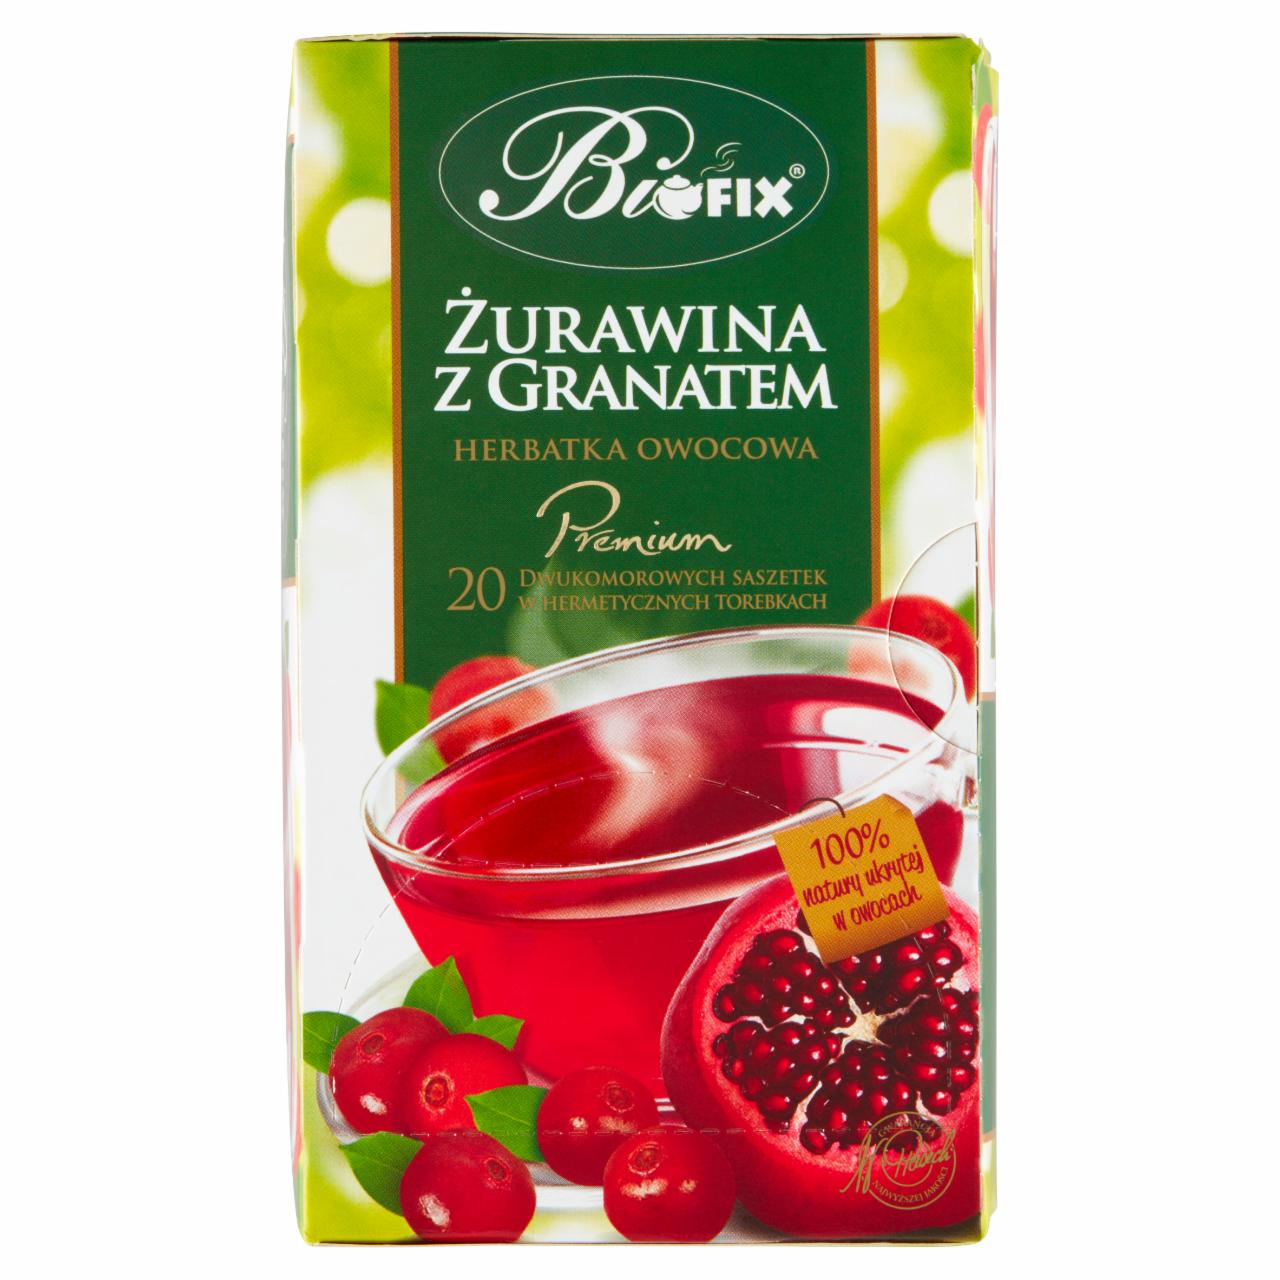 Zdjęcia - Bifix Premium Herbatka owocowa żurawina z granatem 40 g (20 x 2 g)